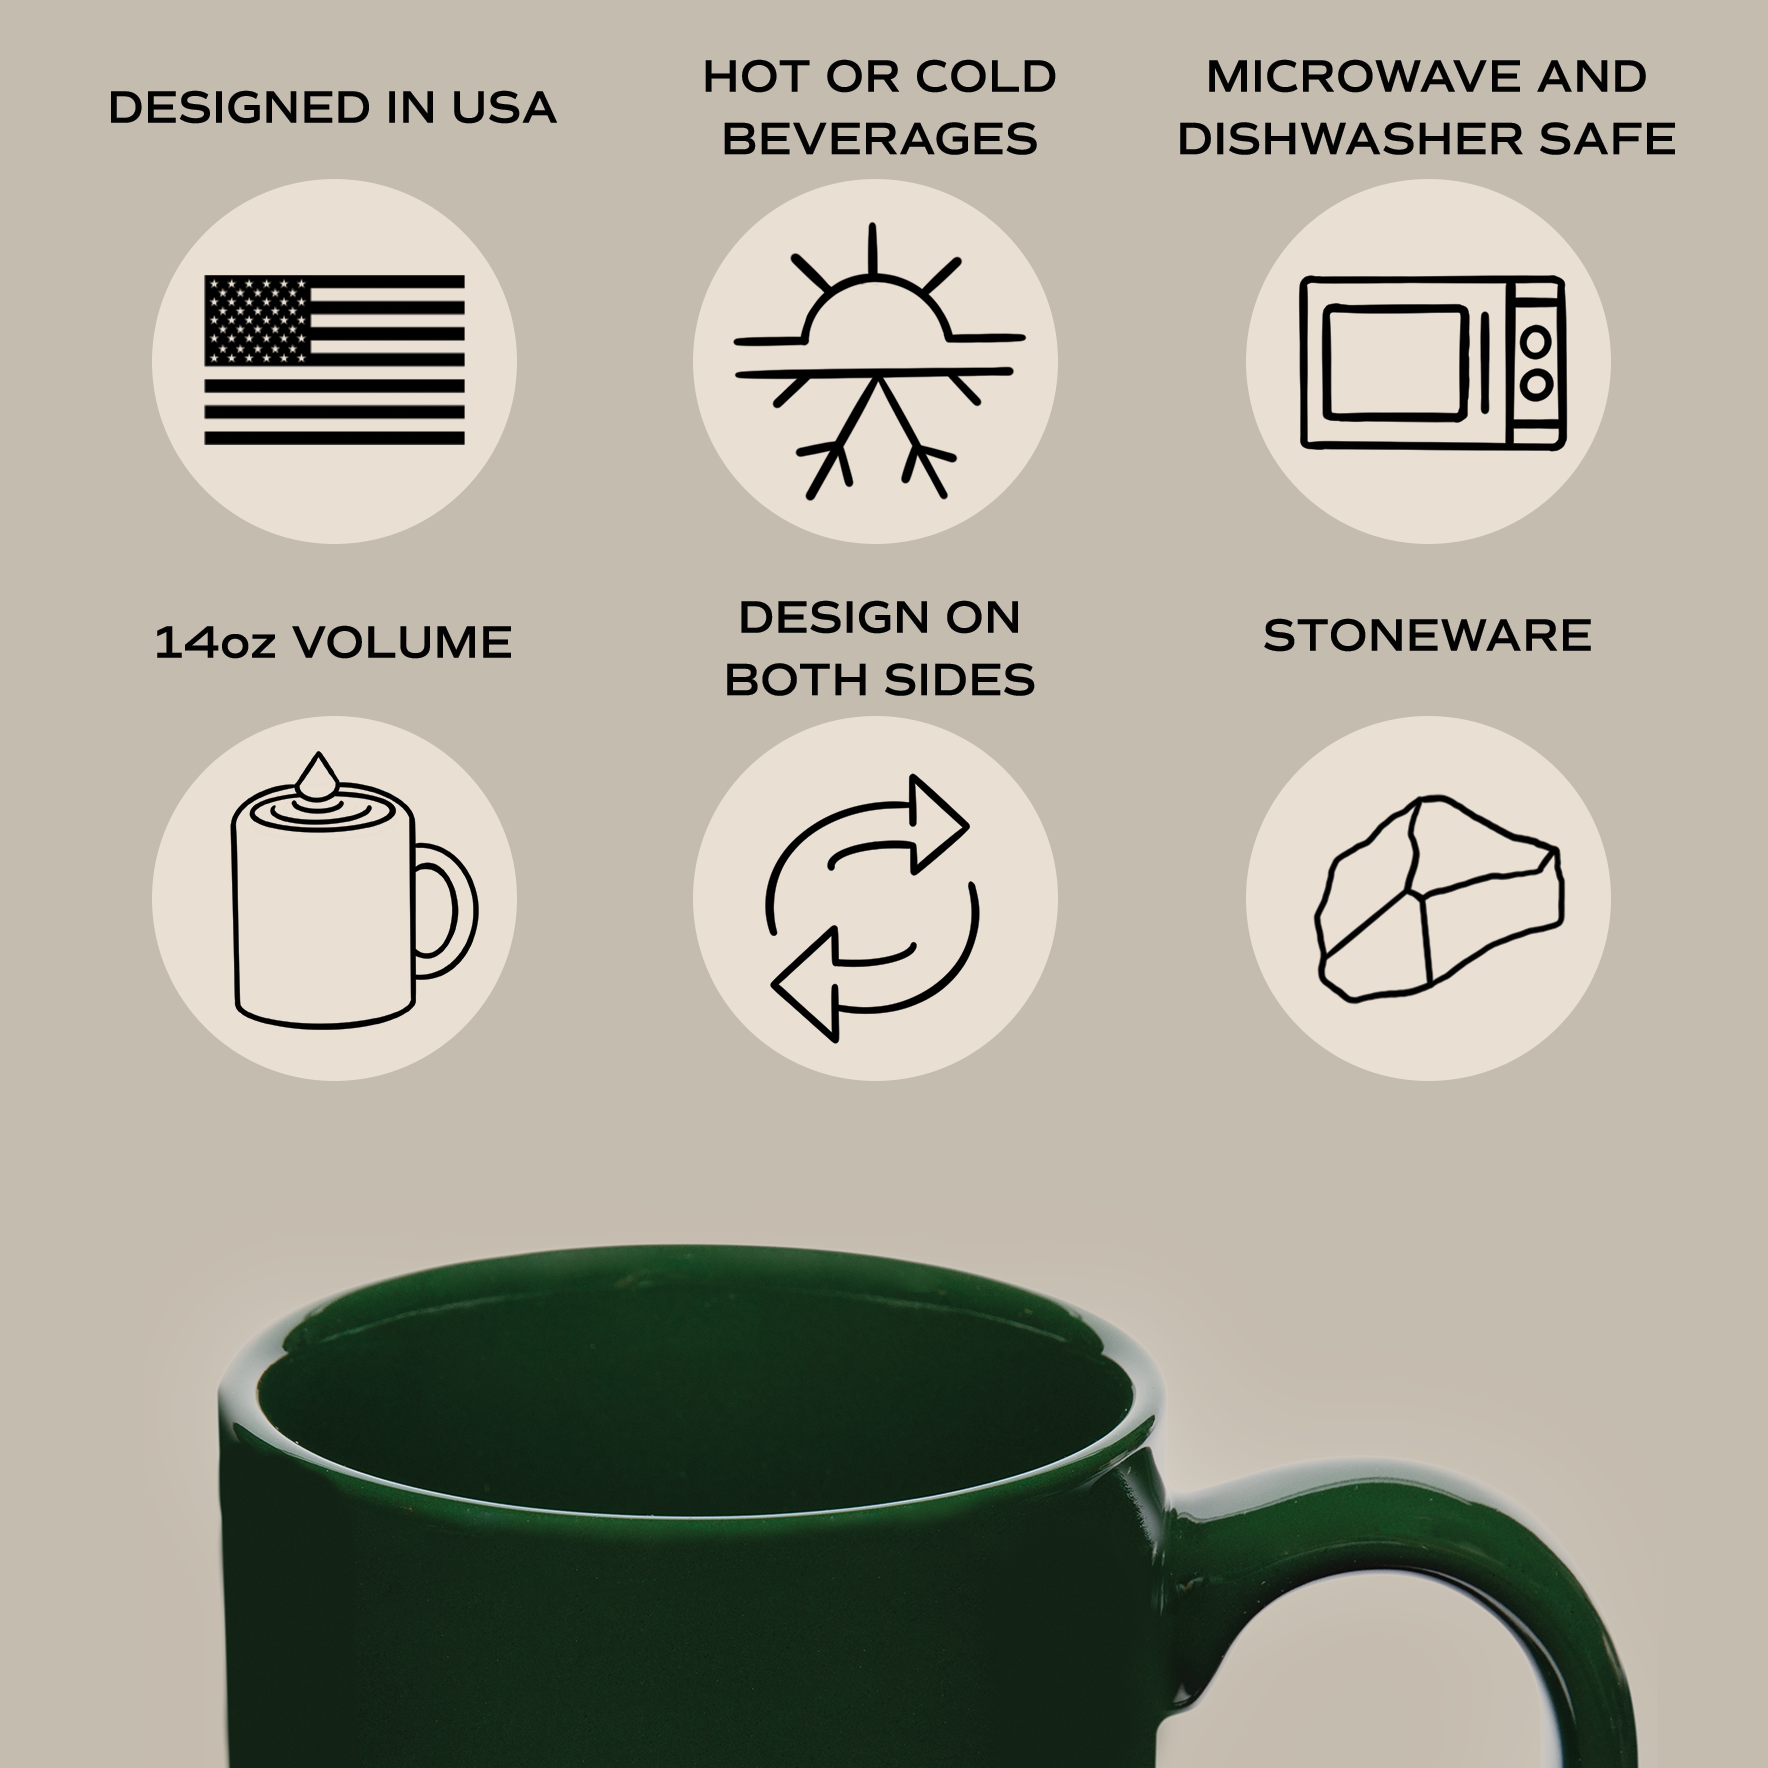 Fa La La Stoneware Coffee Mug